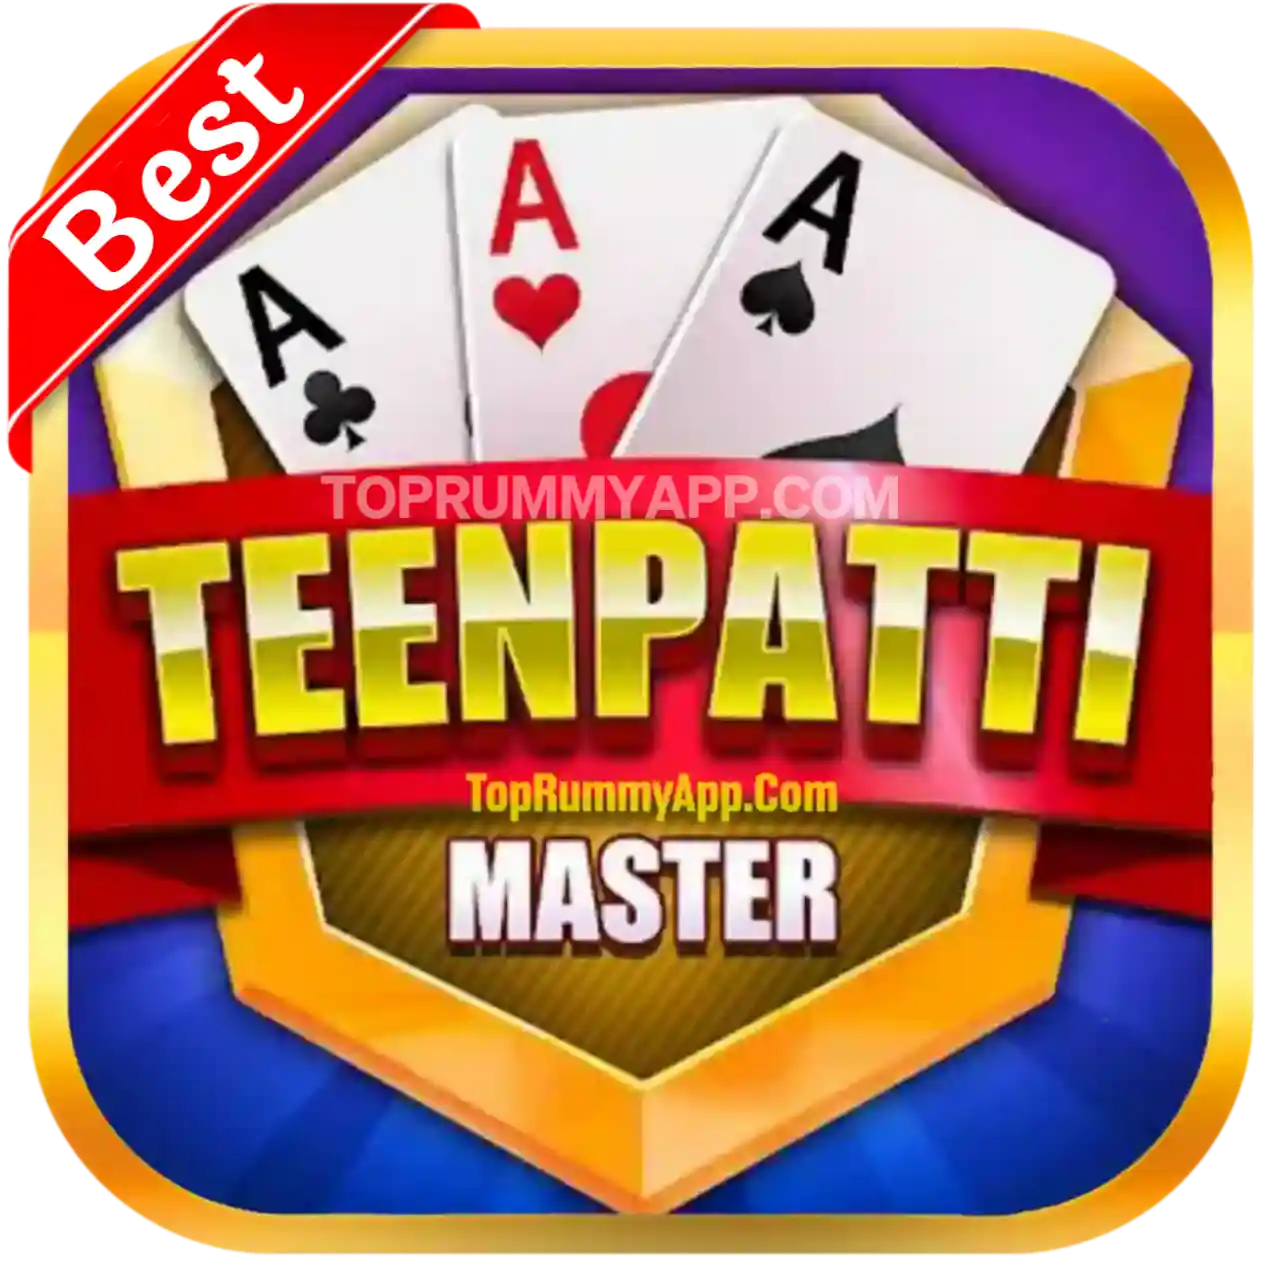 Teen Patti Master App Download All Teen Patti App List ₹41 Bonus